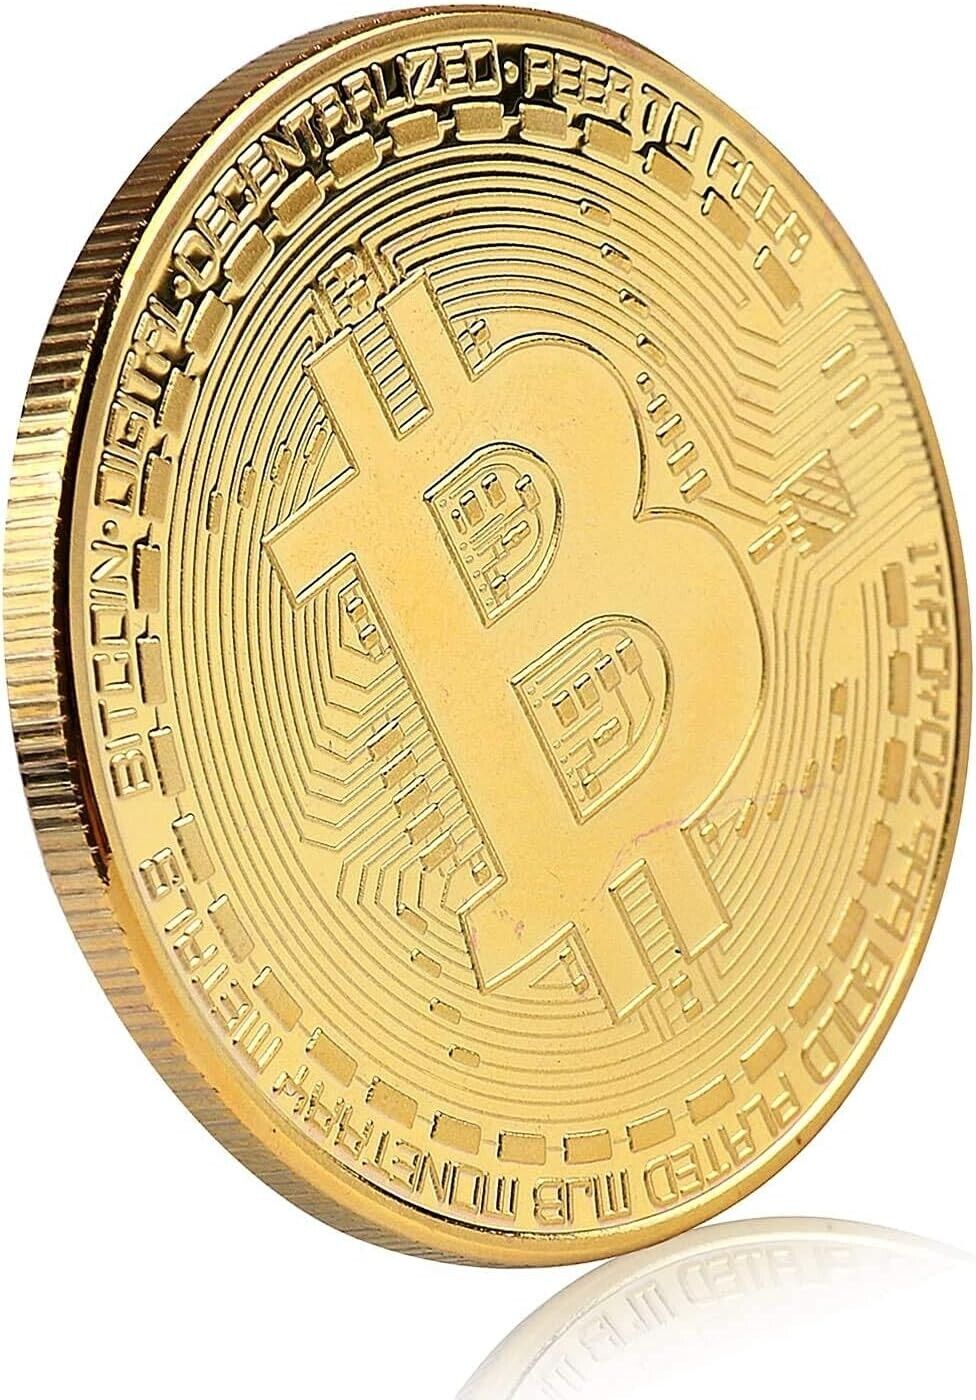 New Bitcoin Coin Souvenir  Physical Bitcoin Collection, Gold Color Great Gift